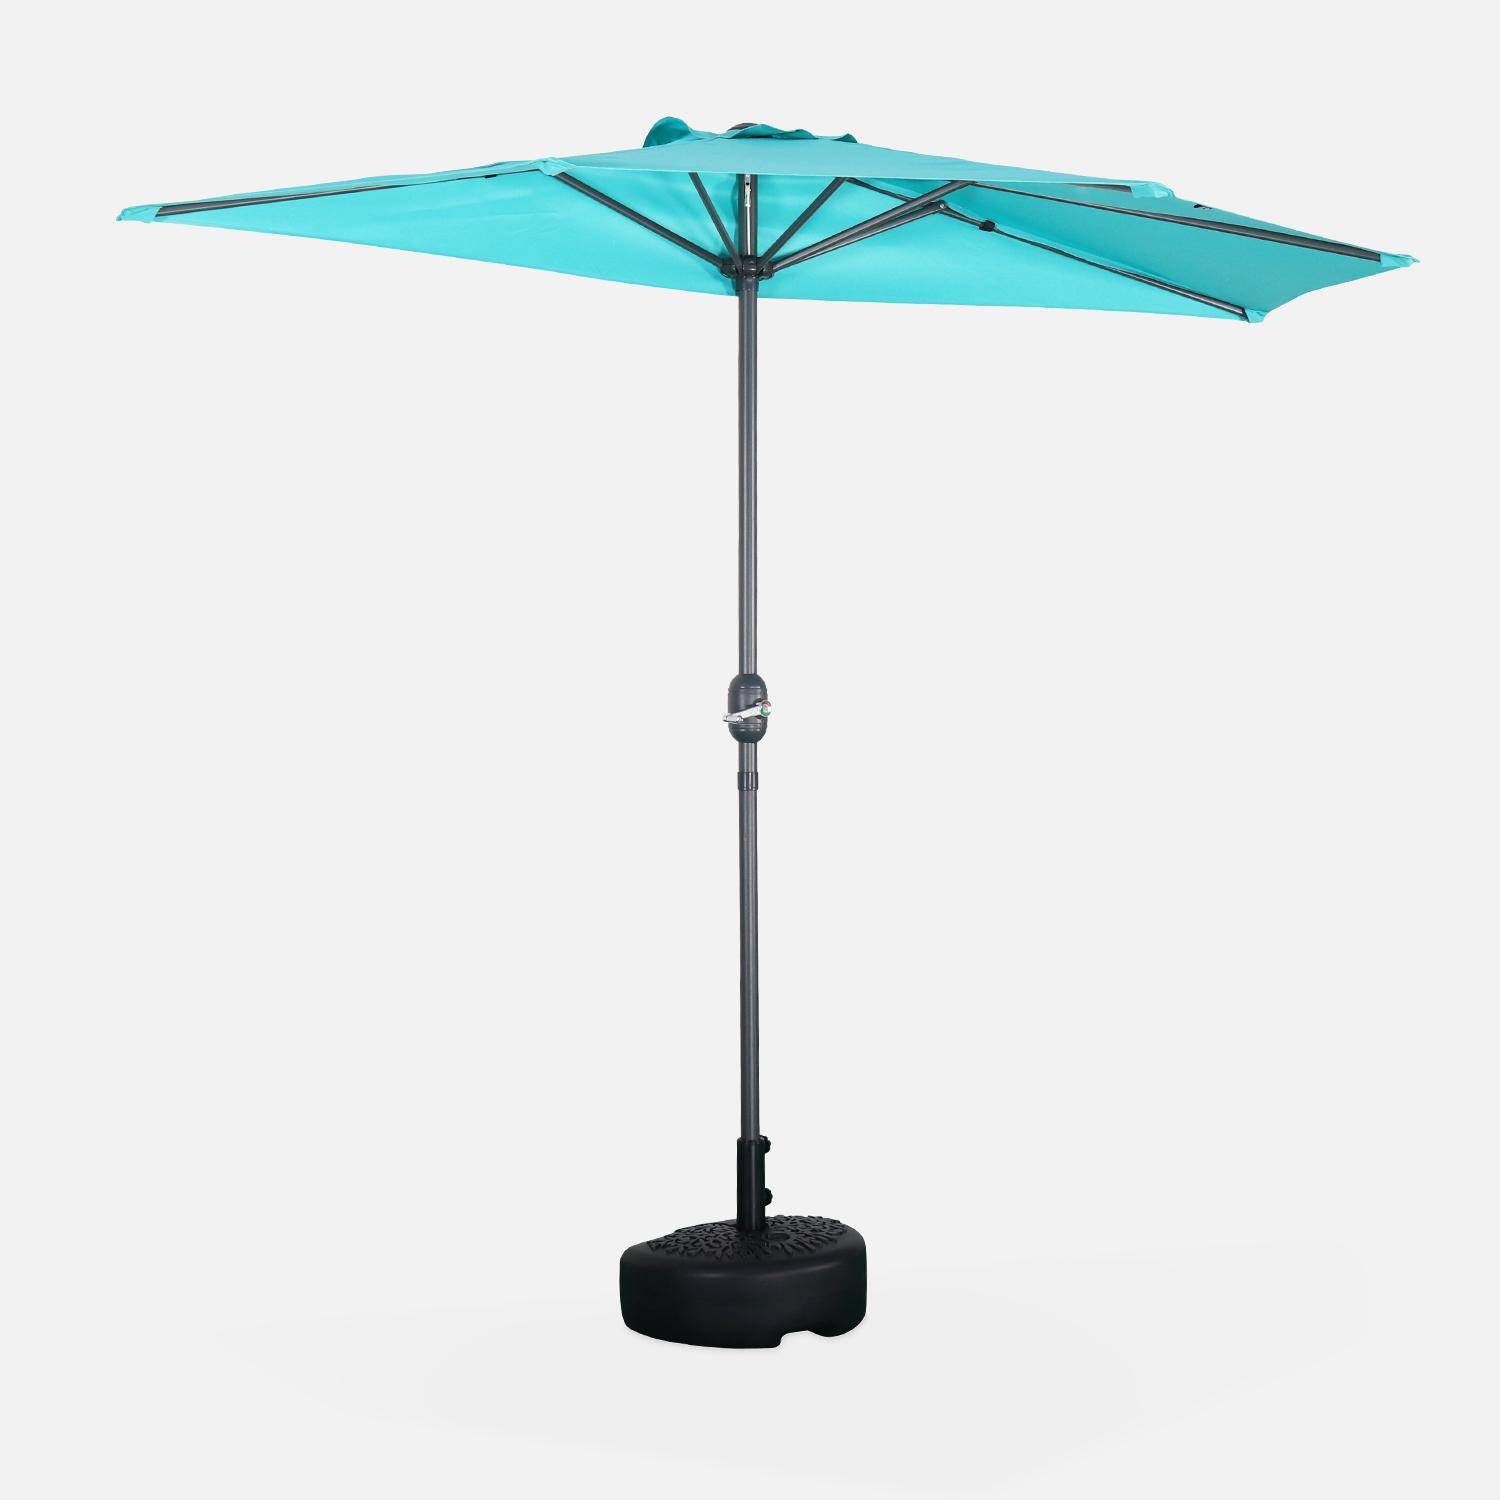  Parasol de balcon Ø250cm  – CALVI – Demi-parasol droit, mât en aluminium avec manivelle d’ouverture, toile turquoise Photo1